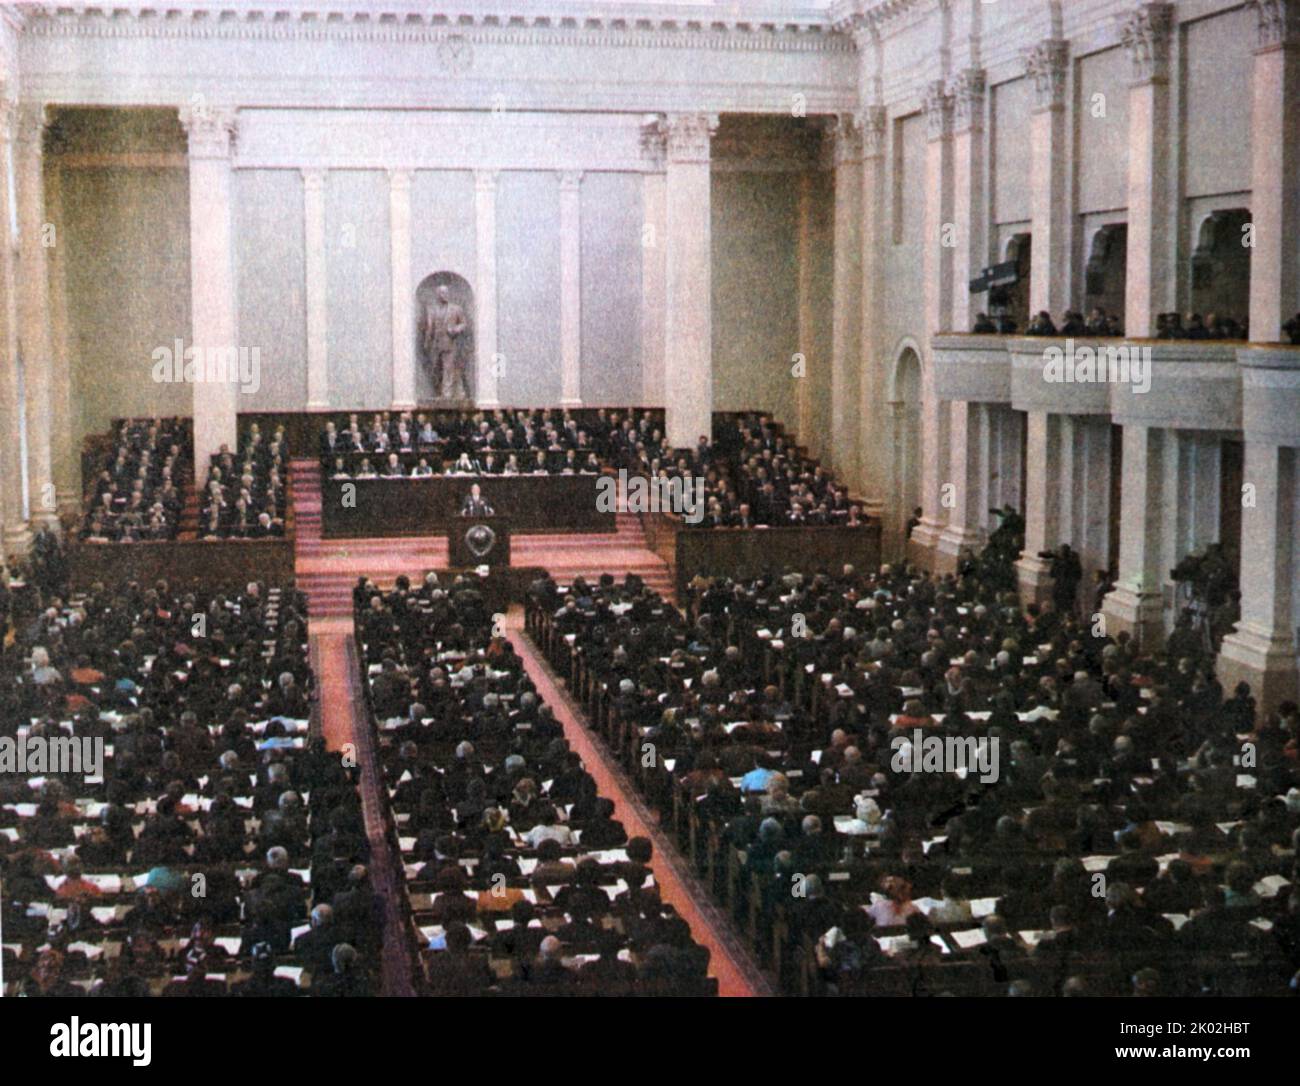 Ottobre 7, 1977. Una sessione straordinaria del Soviet Supremo dell'URSS ha approvato e approvato la nuova Costituzione dell'URSS. Foto Stock